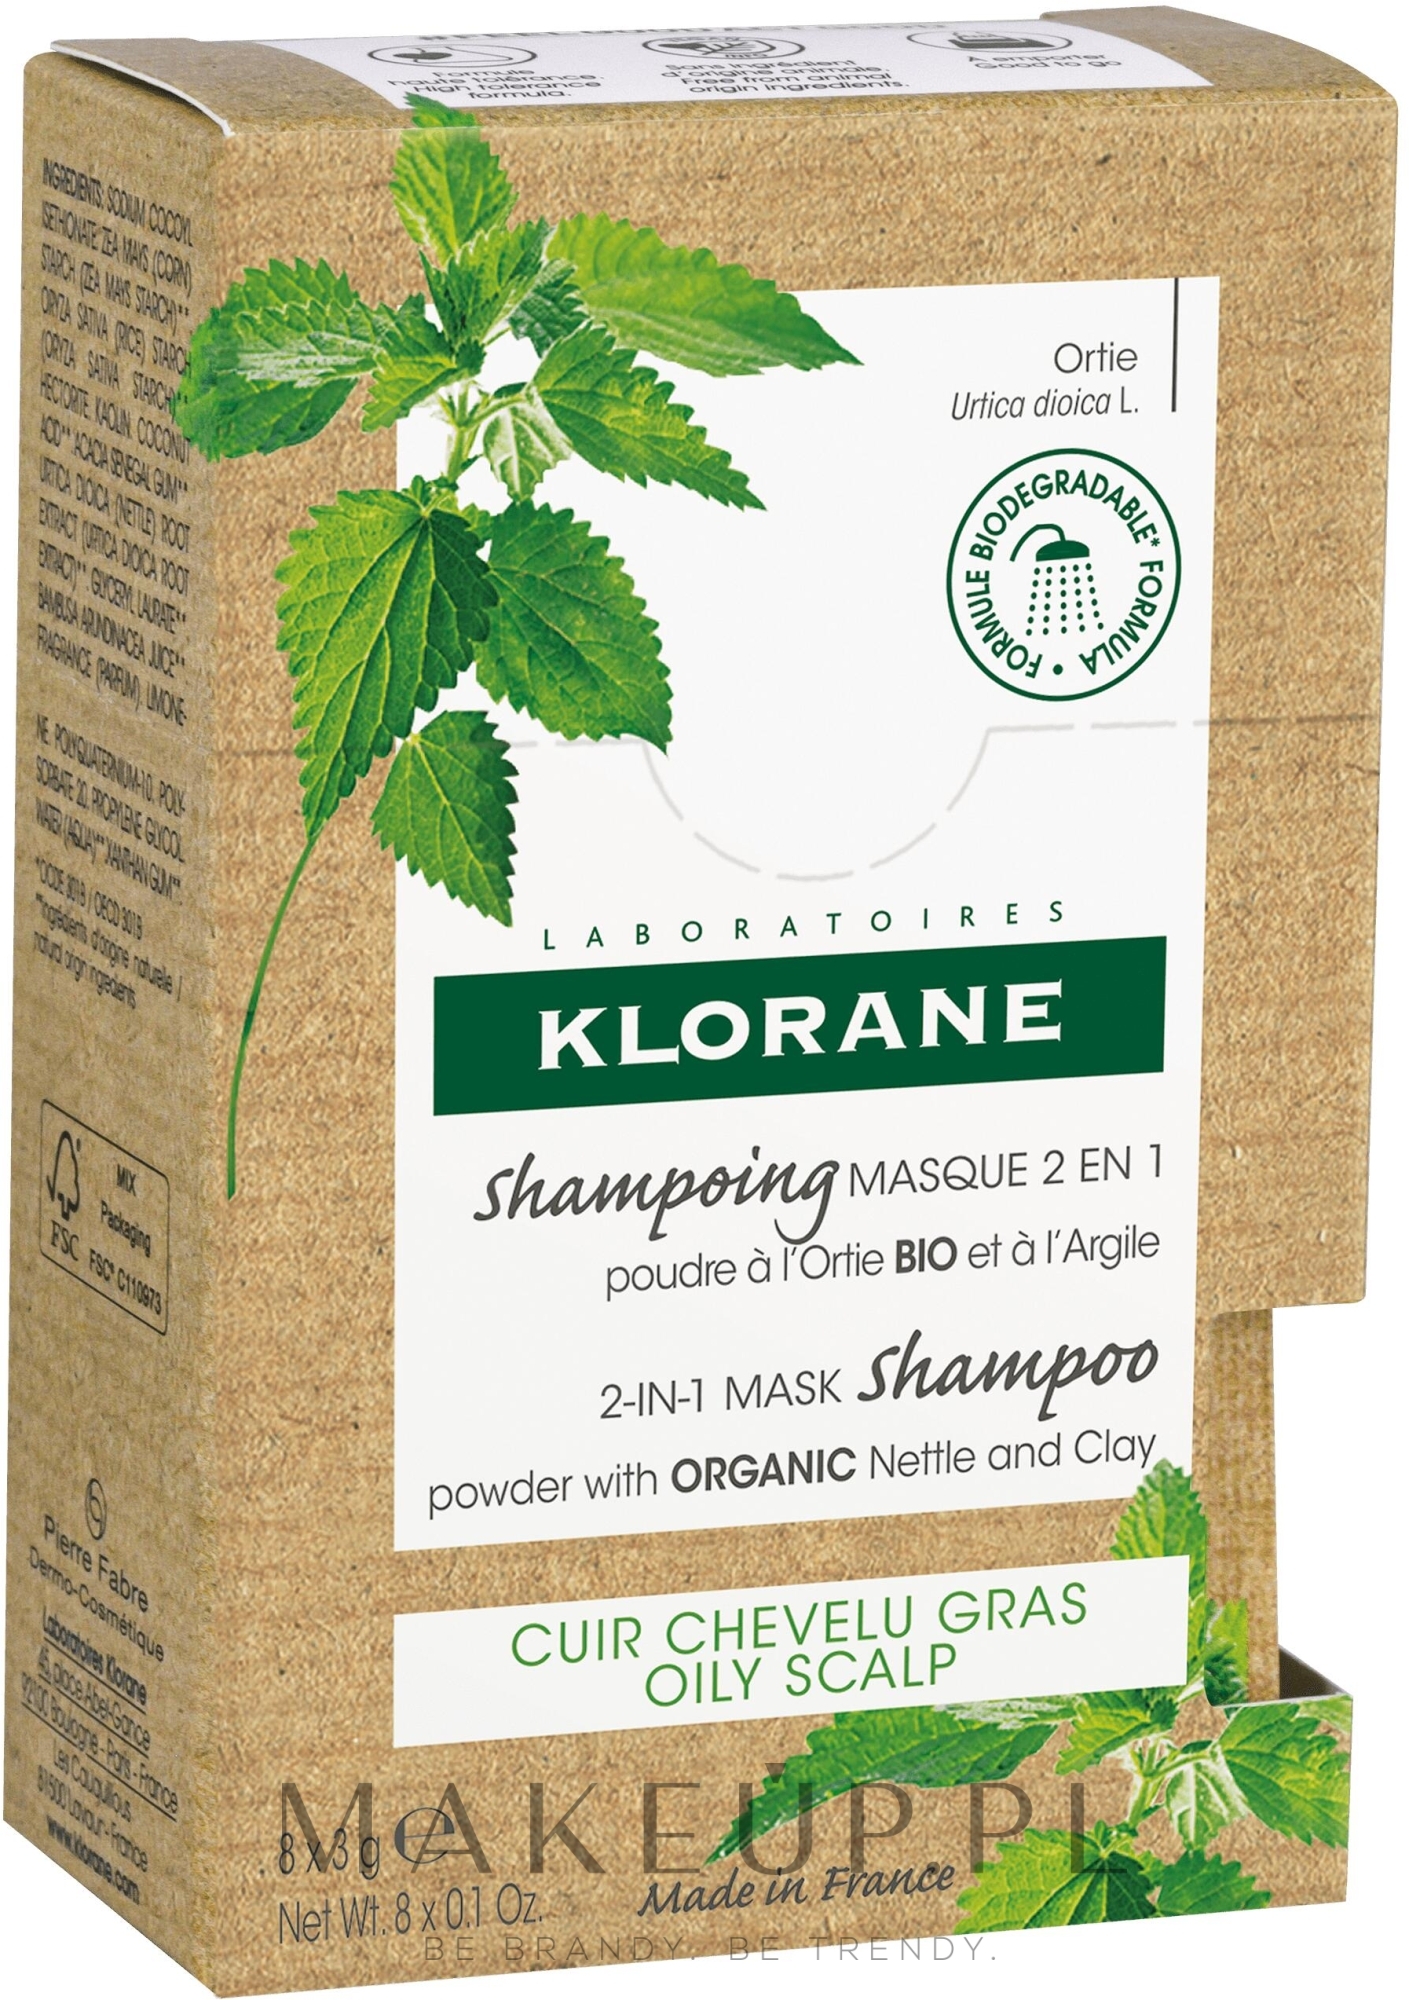 Szampon-maska do włosów 2 w 1 z ekstraktem z pokrzywy - Klorane 2-in-1 Mask Shampoo Powder with Nettle and Clay — Zdjęcie 8 x 3 g